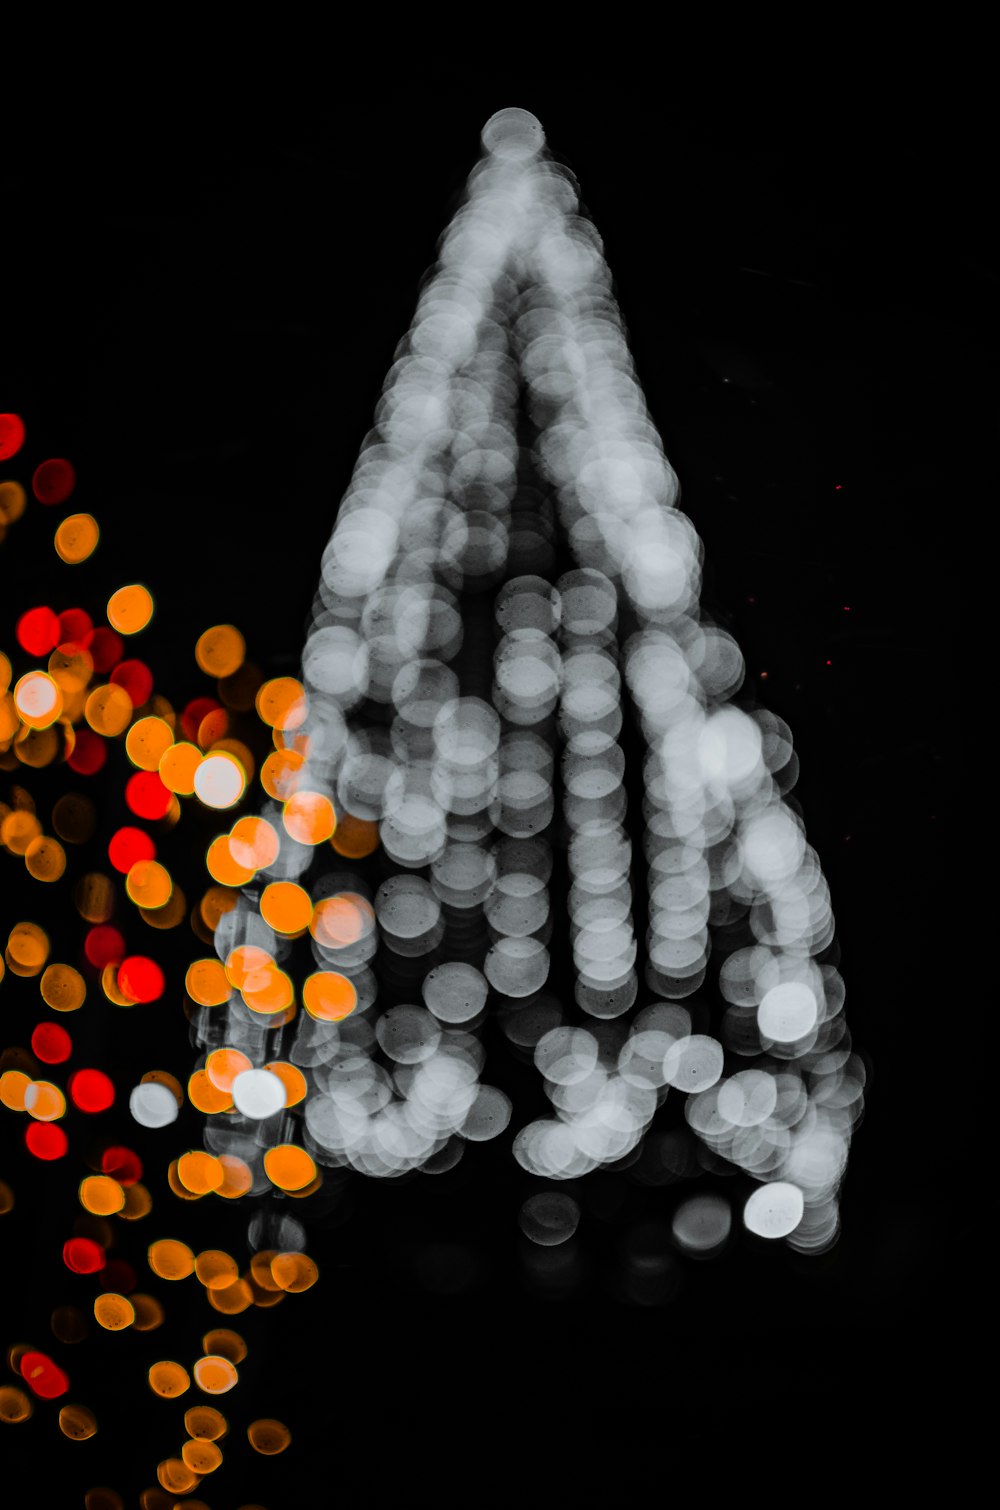 bokeh photography of Christmas tree